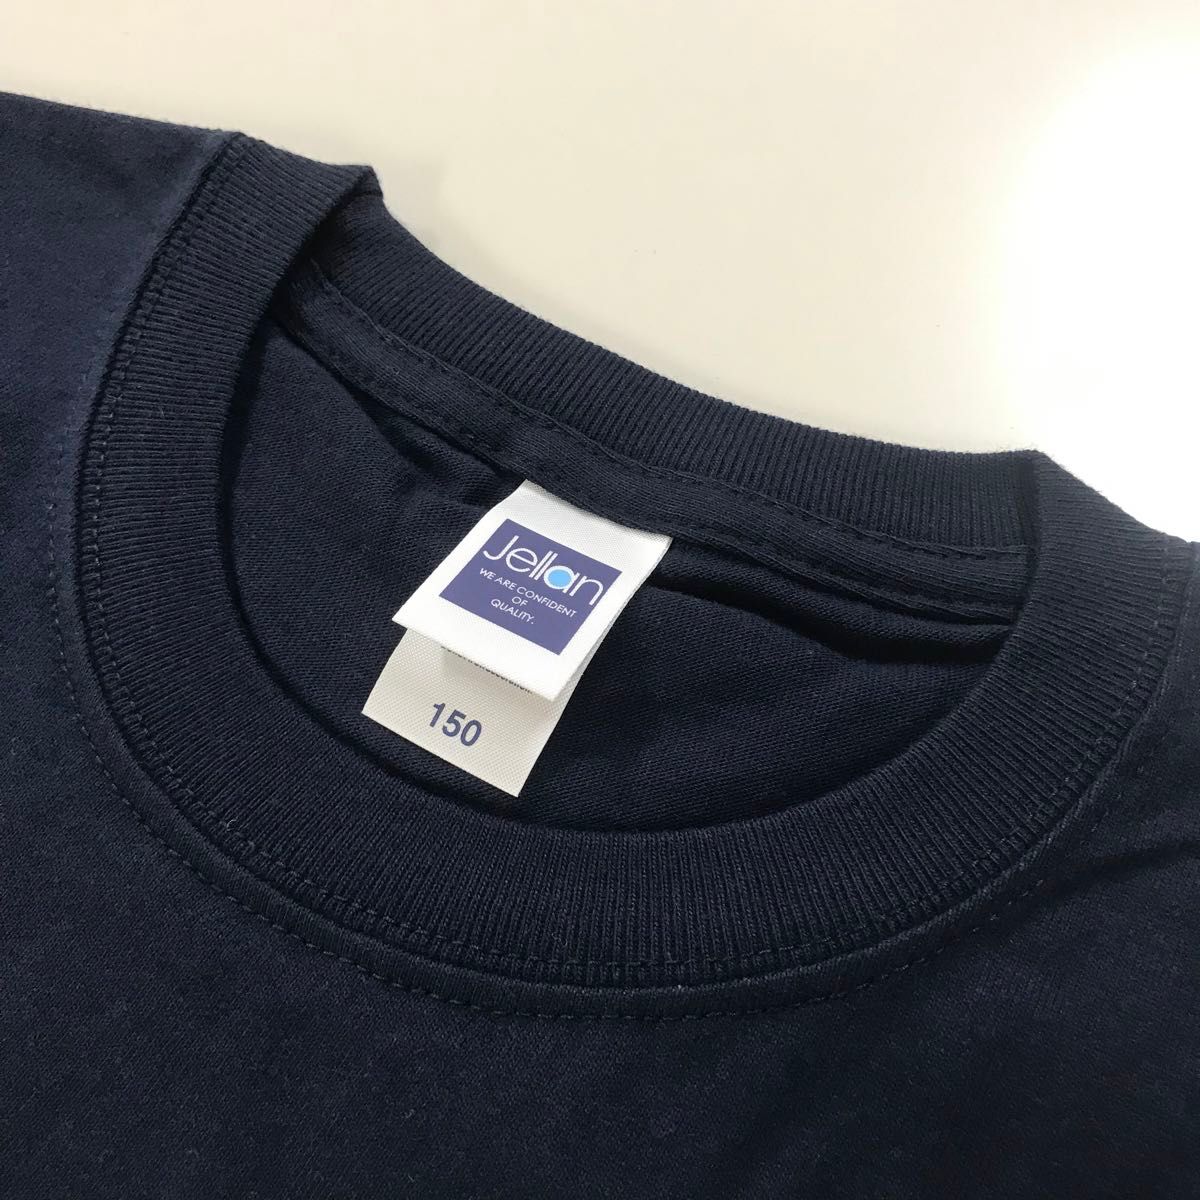 【レア】Tシャツ 半袖 6.2オンス【092-MJT】 150 ネイビー 3枚セット 圧縮発送